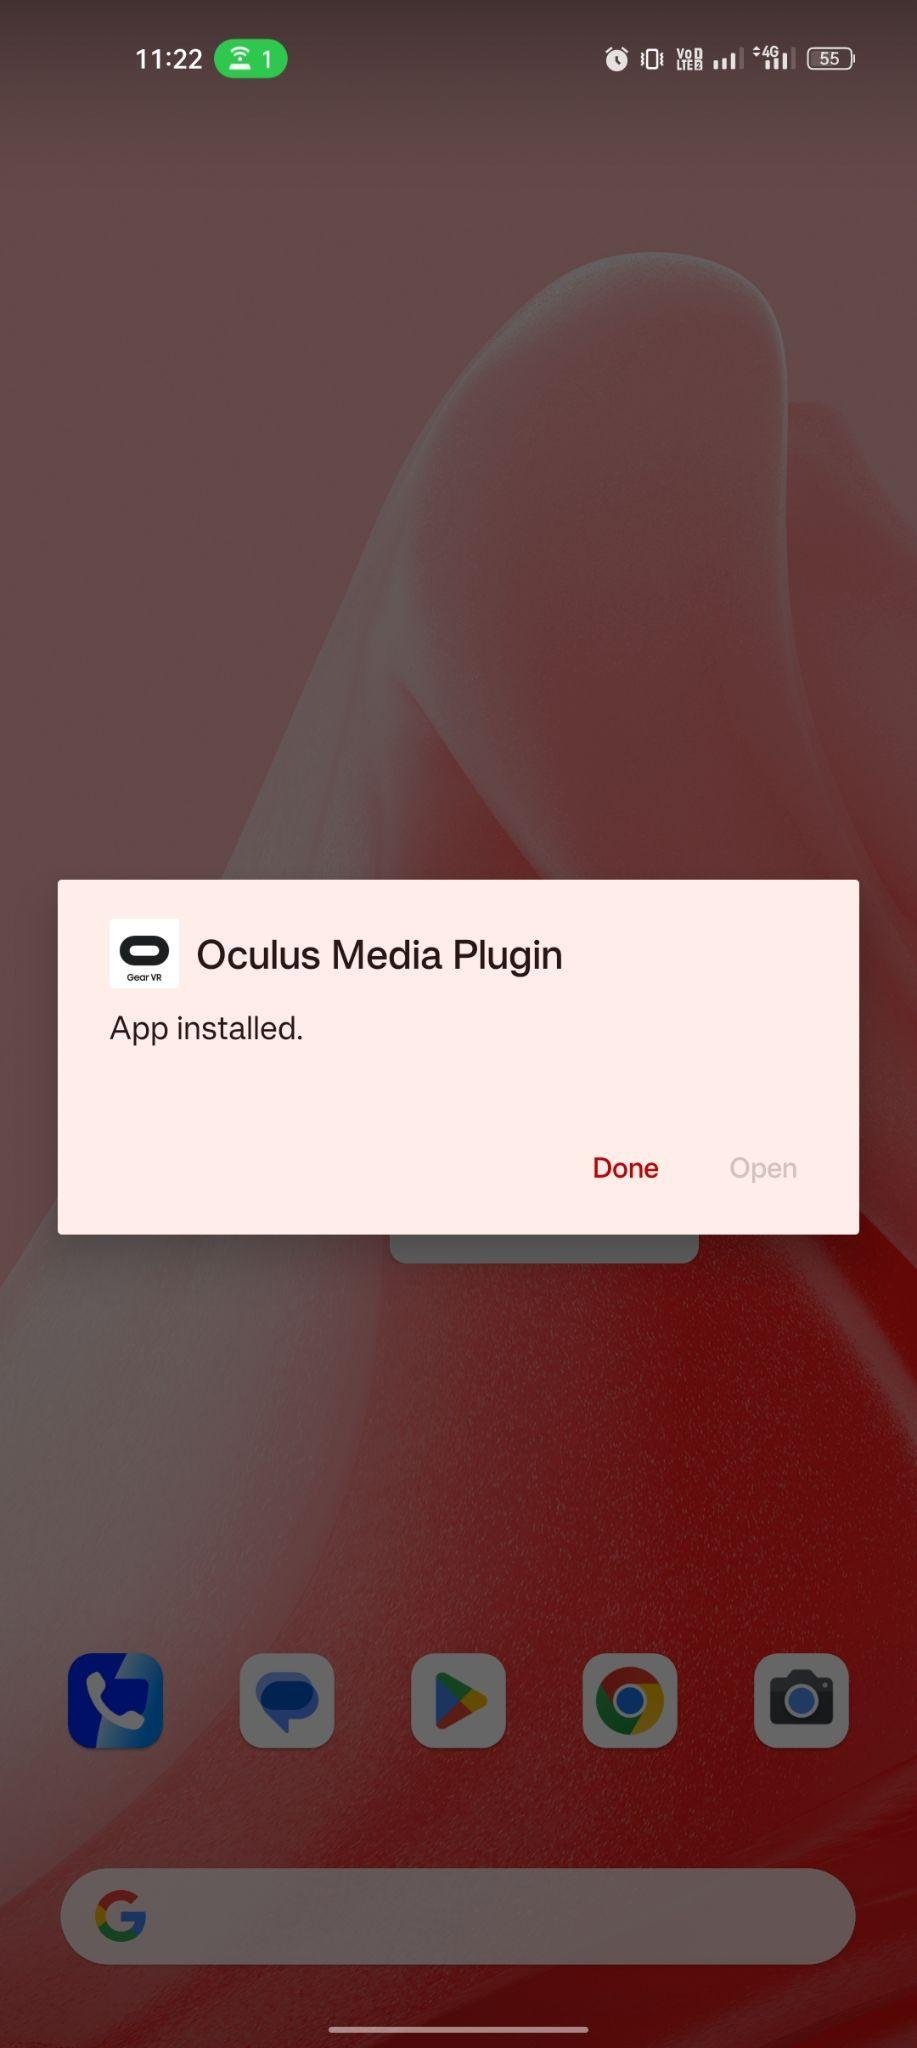 Oculus Media Plugin apk installed